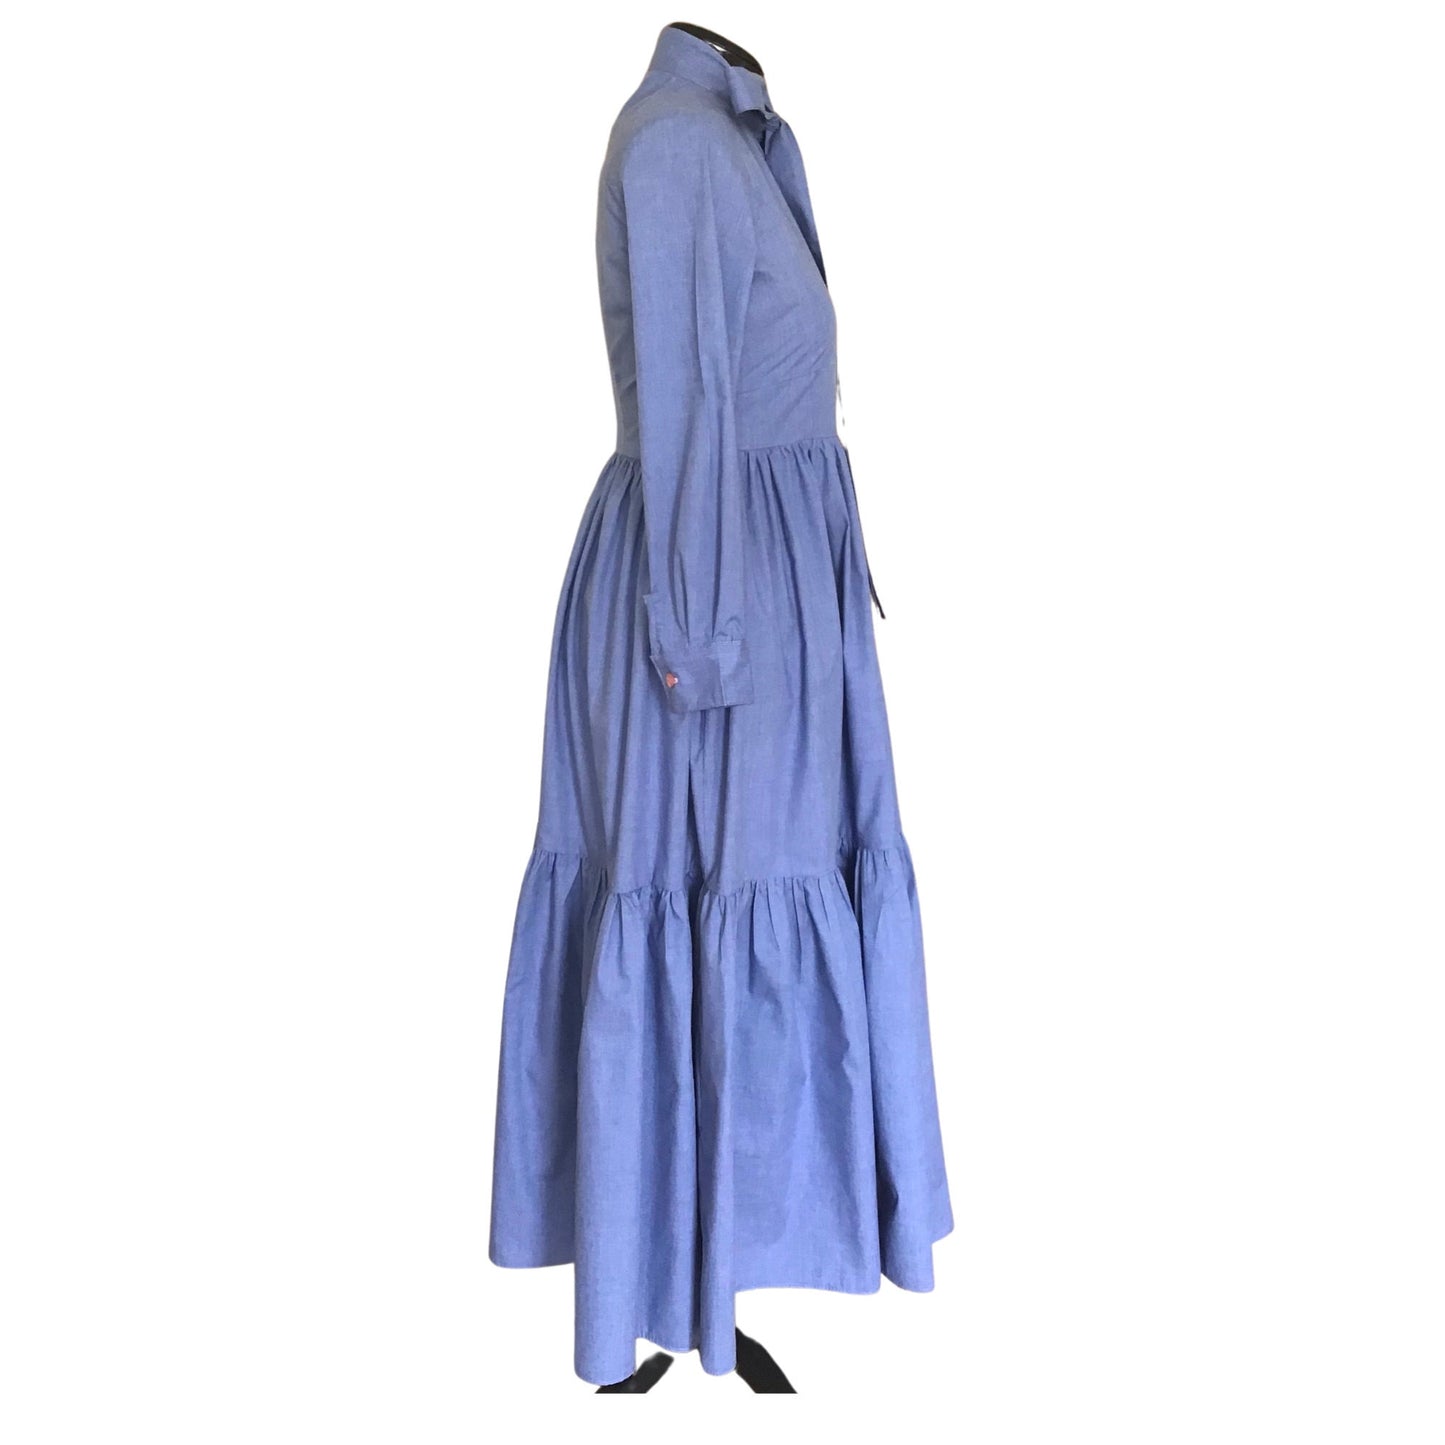 The Donna dress, Blue Maxi Dress